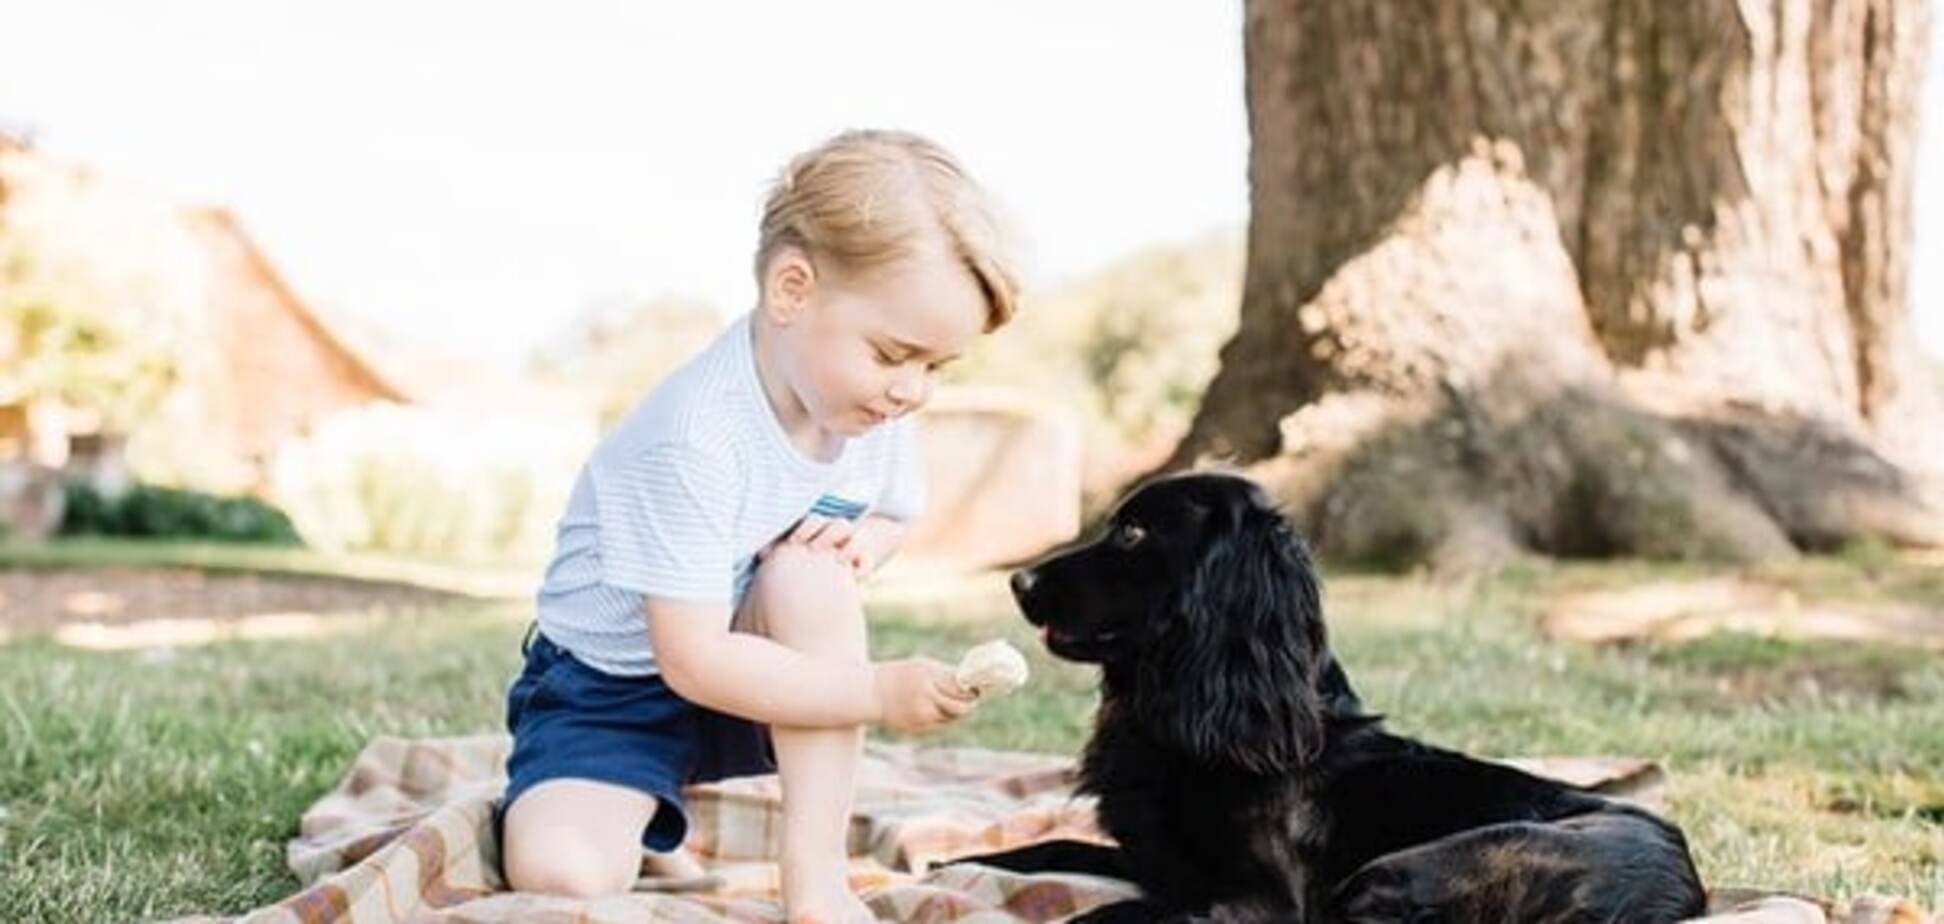 Именинник дня: 3-х летний принц Джордж с собакой снялся в милой фотосессии